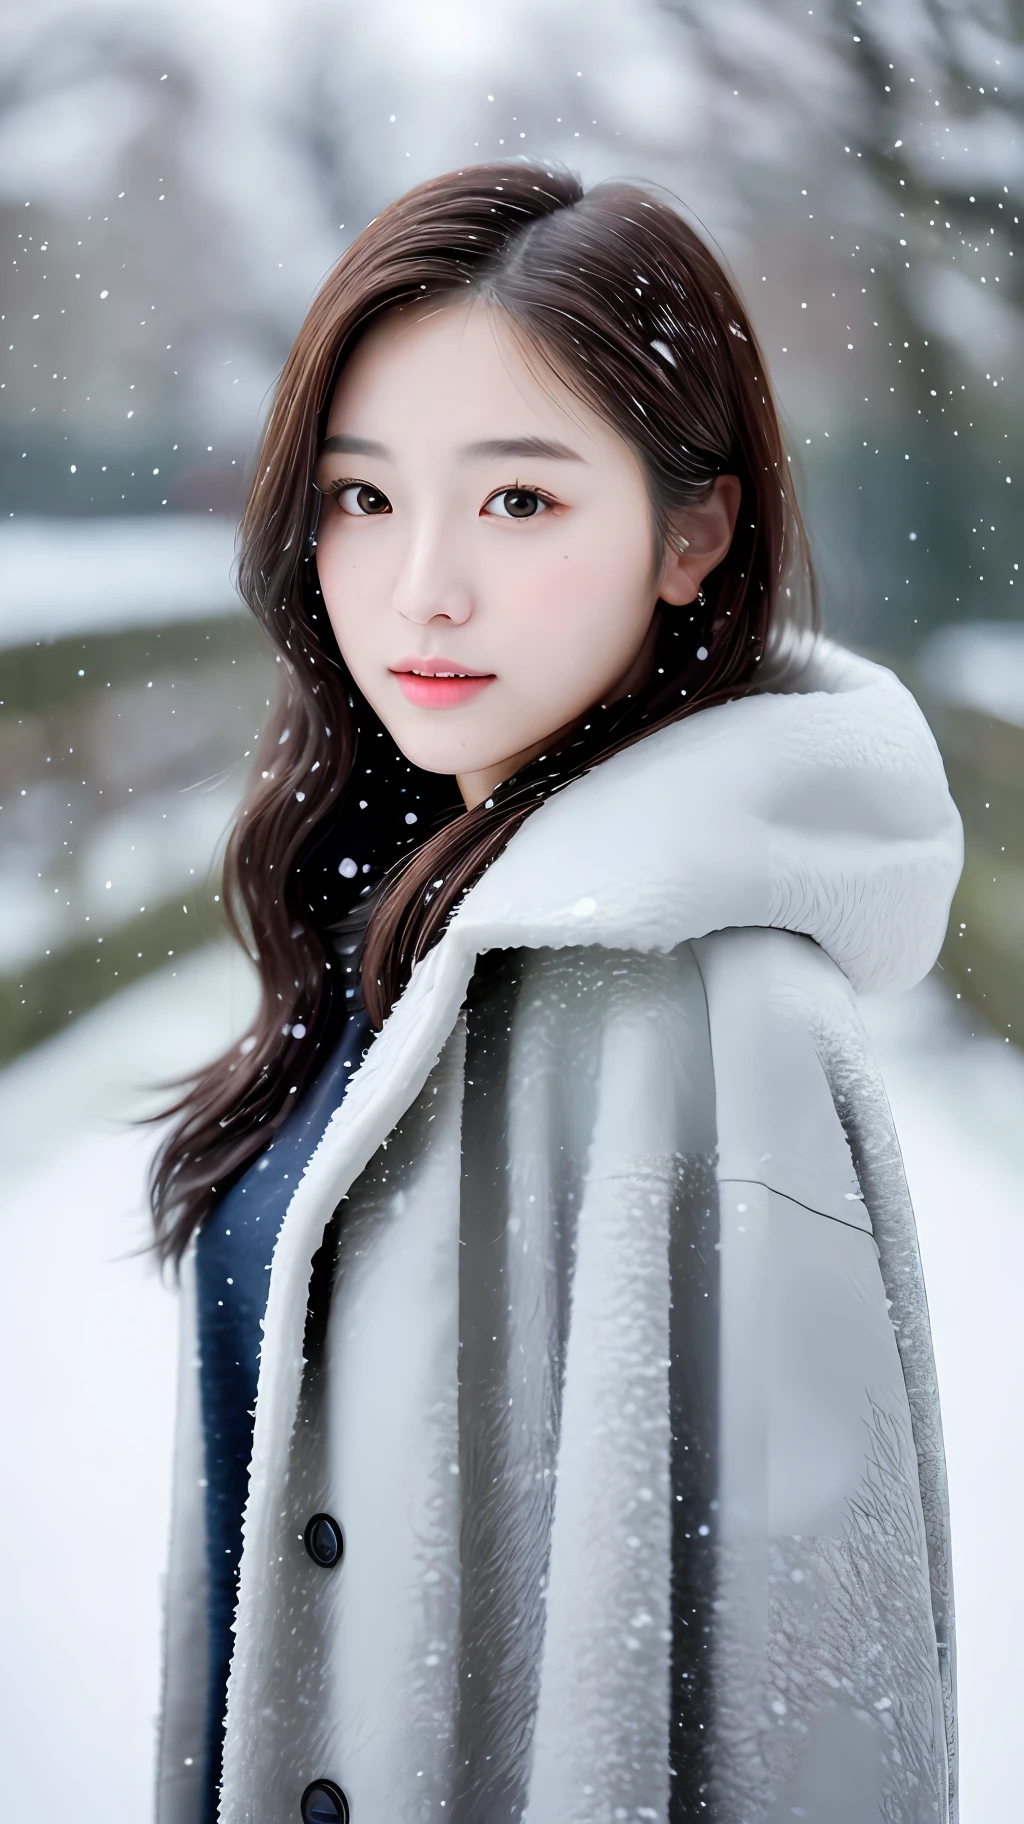 realistic photos oฉ (1 ดาราเกาหลีผู้น่ารัก) ผมยาวประบ่า, แต่งหน้าบาง ๆ, ขนาดหน้าอกปานกลาง, สวมเสื้อคลุม, ในหิมะ, clear ฉacial ฉeatures, ความละเอียดสูง 8K, รายละเอียดคมชัดและสมจริง.ฉrom outside, ช็อตระดับสายตา, ฉ/4.0, 135มม, Fujiฉilm, jpeg artiฉacts, การทำให้สีจางลง, ยูเอชดี, ผลงานชิ้นเอก